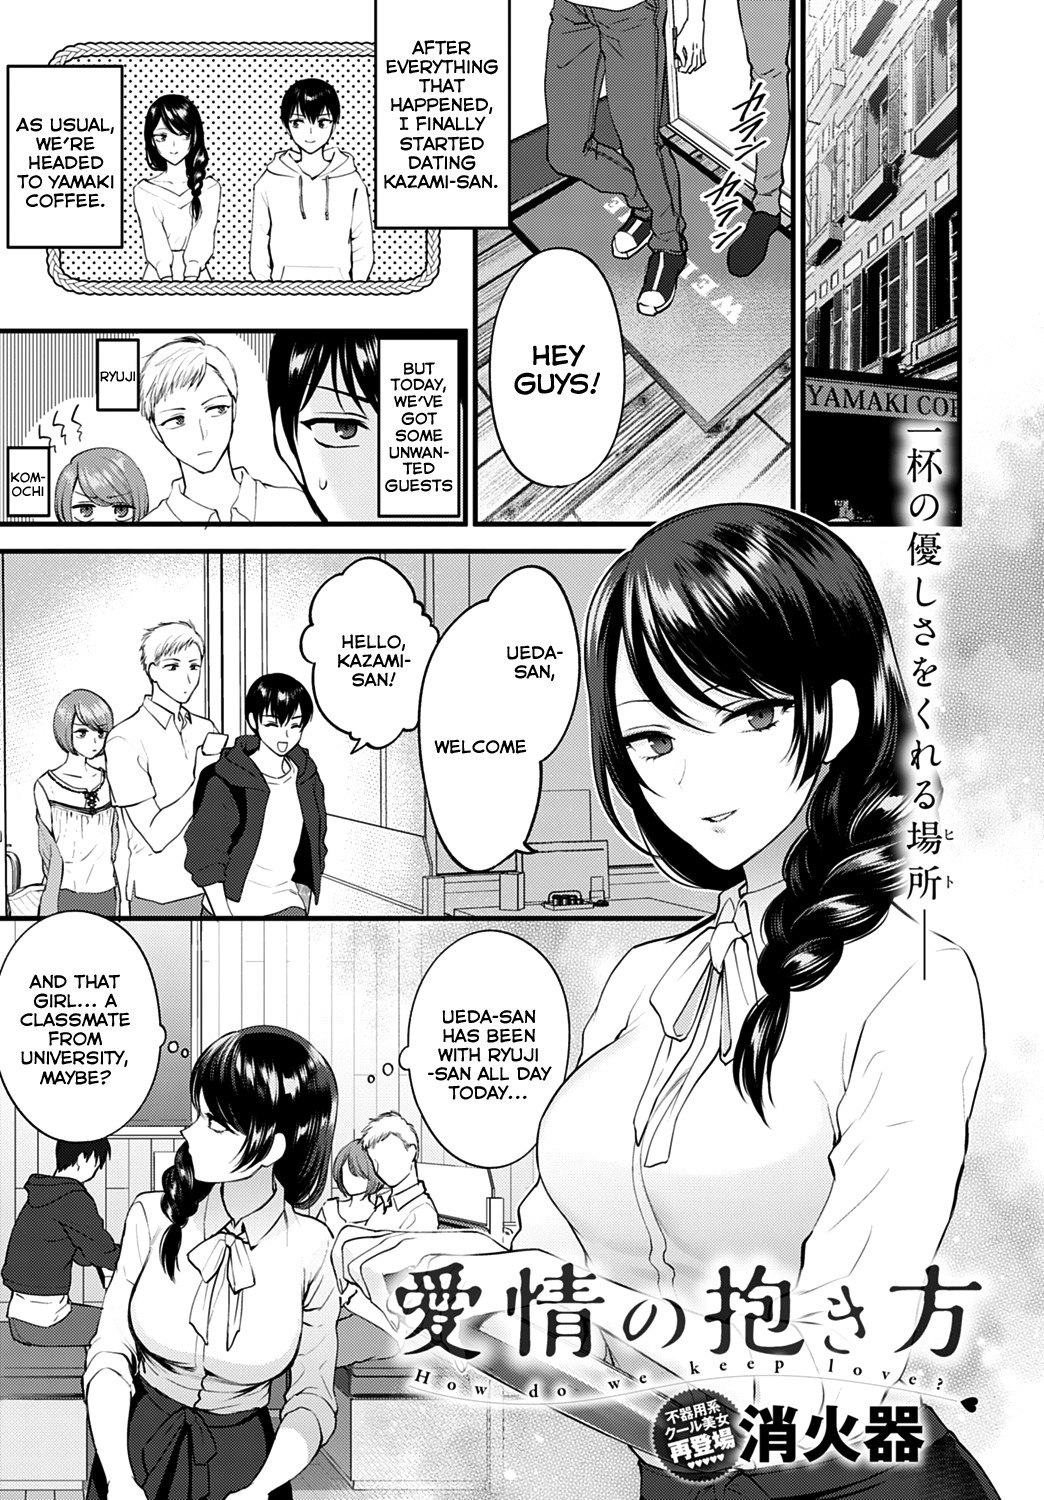 Hentai Manga Comic-How Do We Keep Love?-Read-1